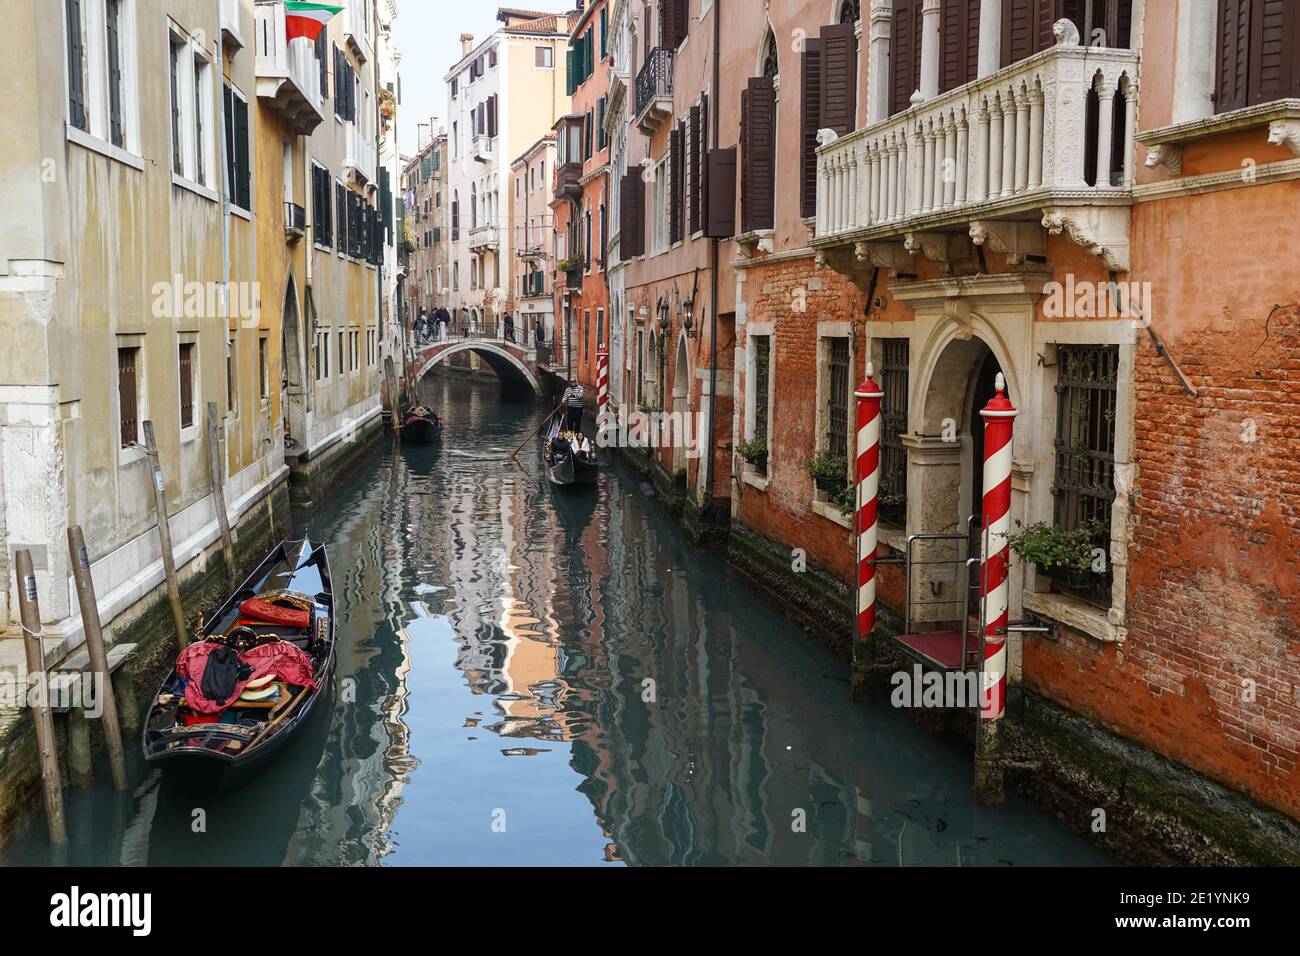 Gondole vénitienne traditionnelle avec des touristes sur le canal rio della Fava à Venise, Italie Banque D'Images